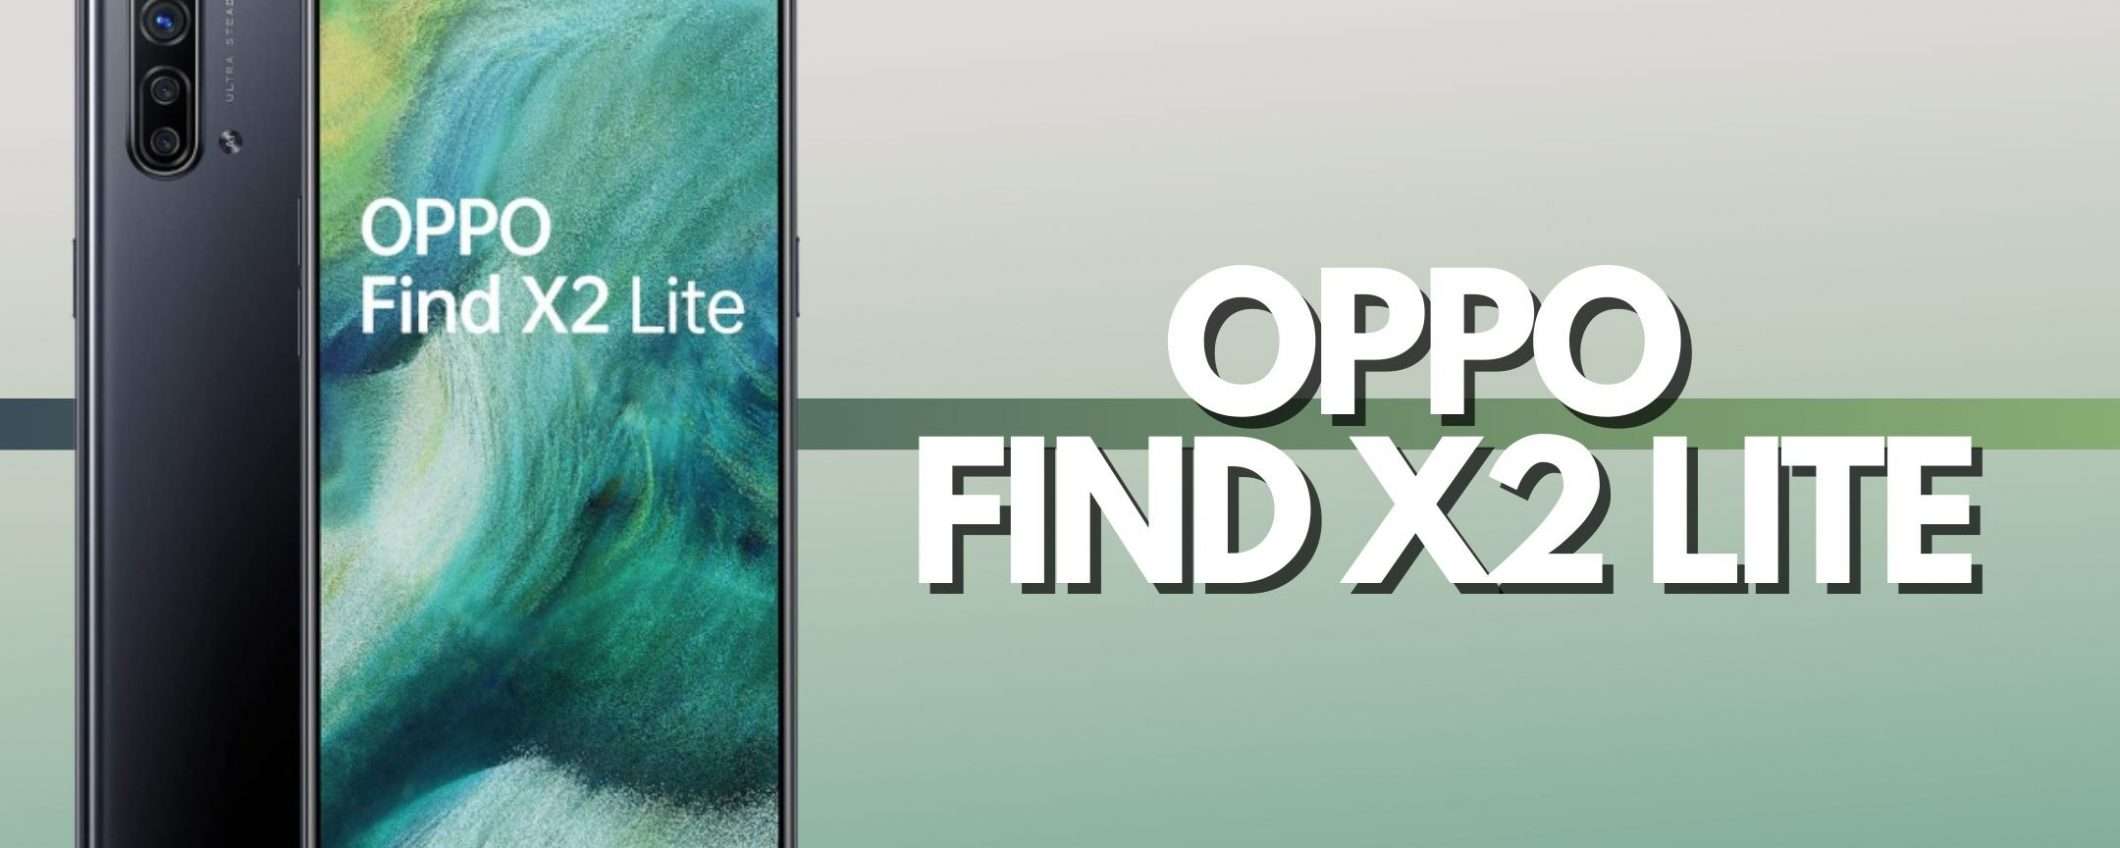 Oppo Find X2 Lite: in offerta SCONTATISSIMO (-220€)